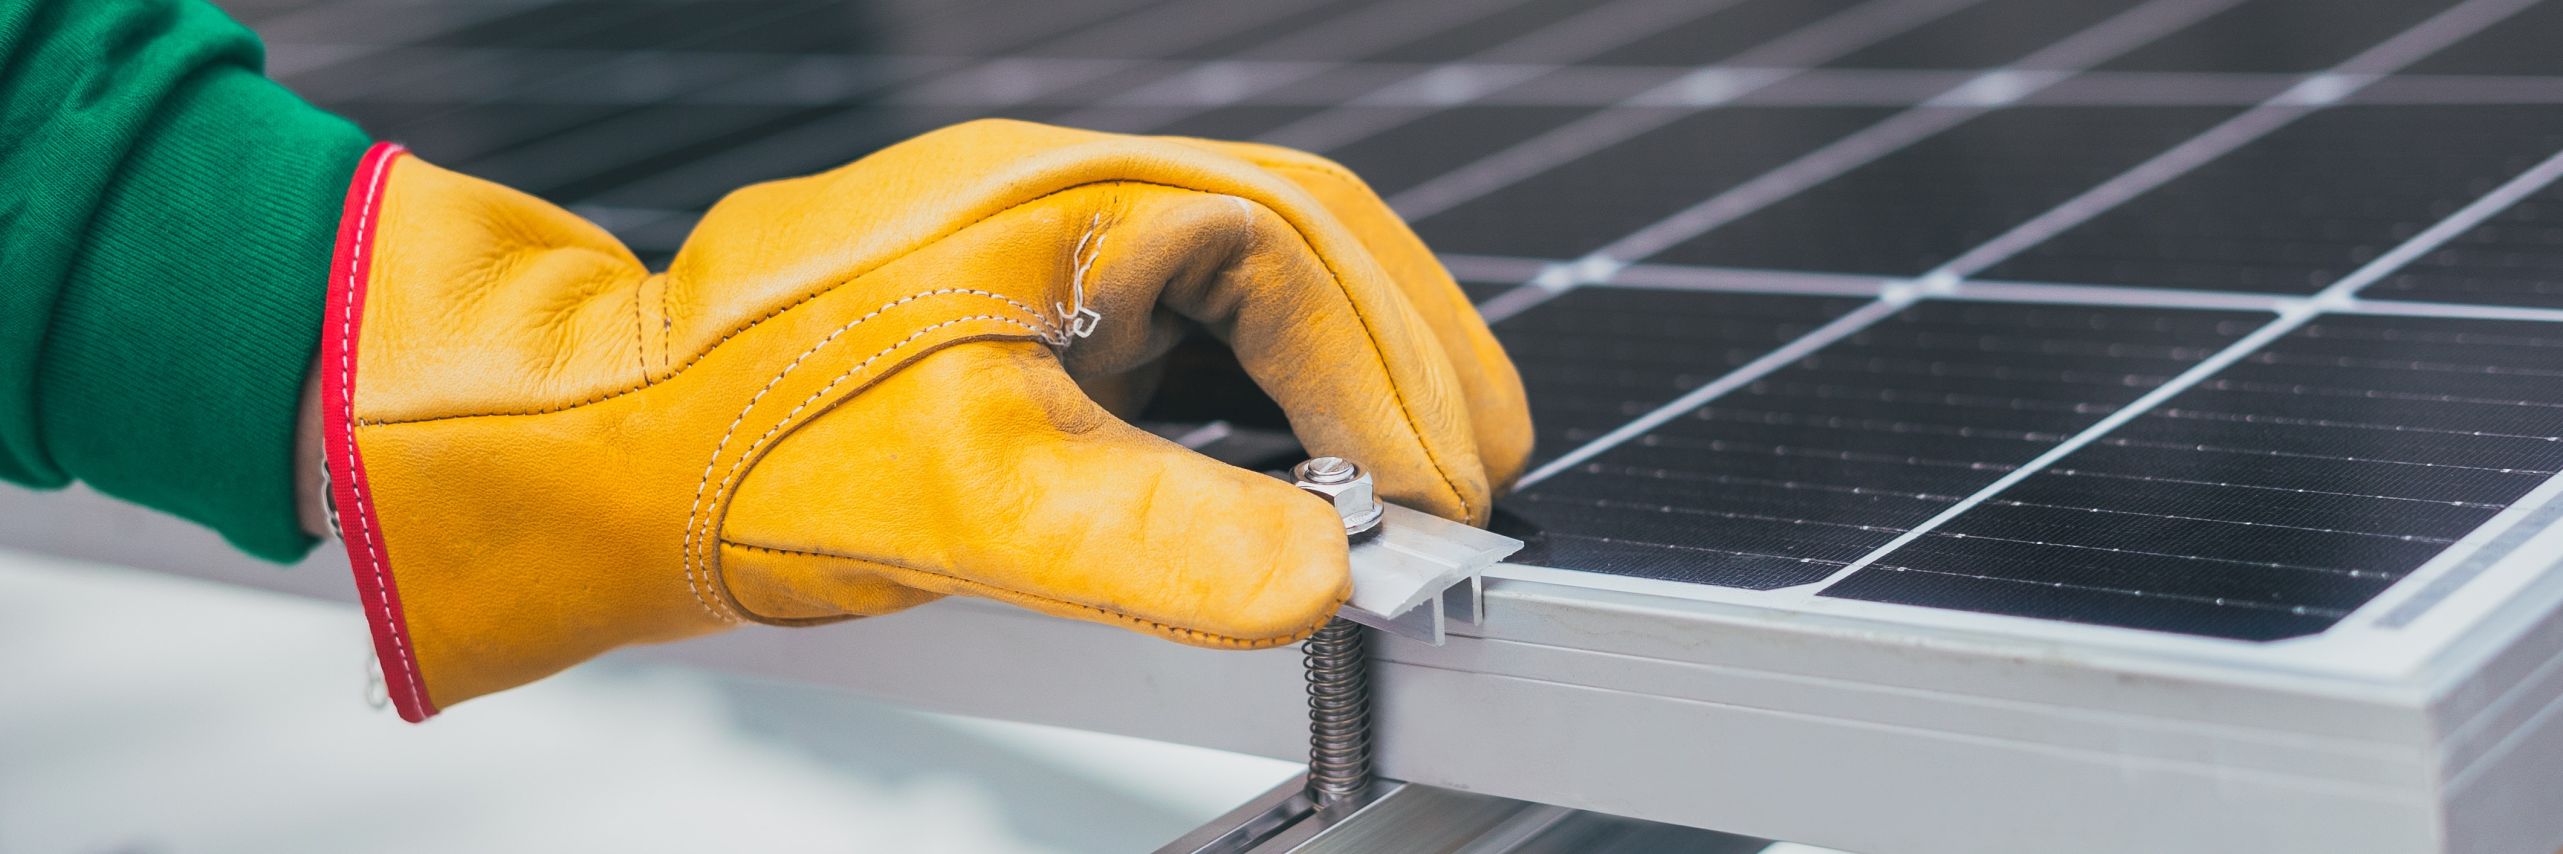 Gloved hand adjusting solar panel